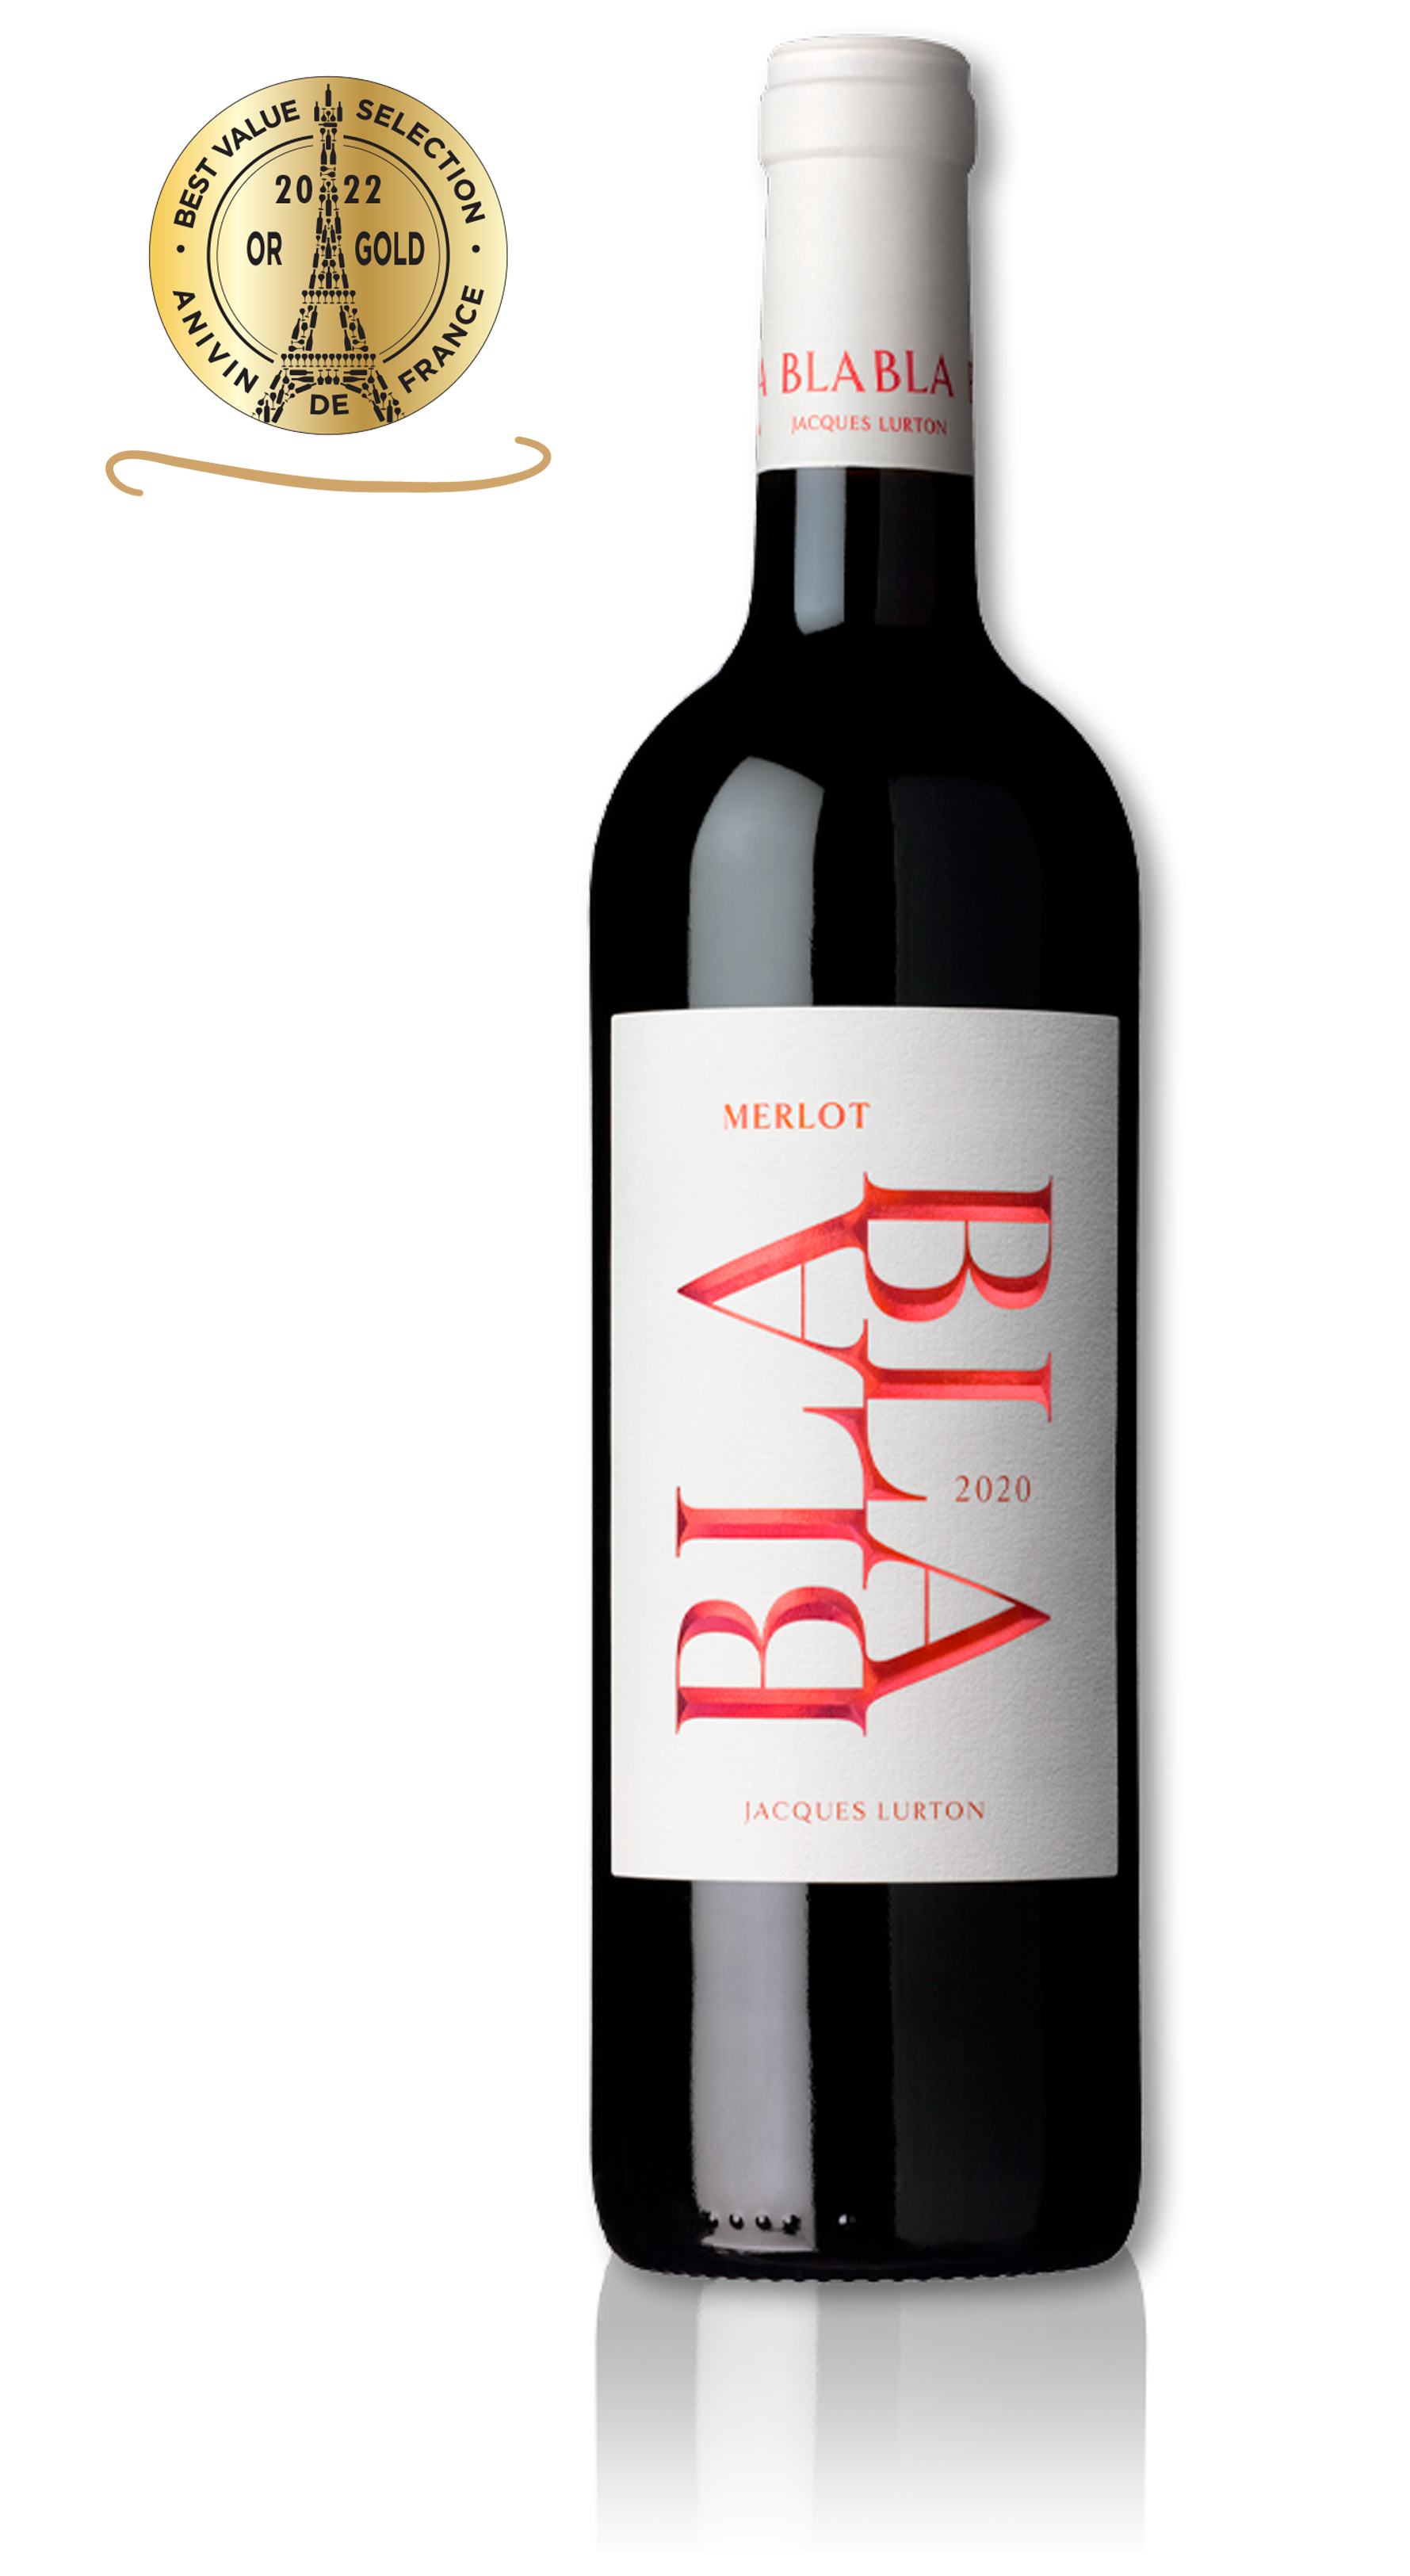 BLA BLA (avec toi) MERLOT - Vin de France - 2020 - 3 bouteilles x 7,35 €